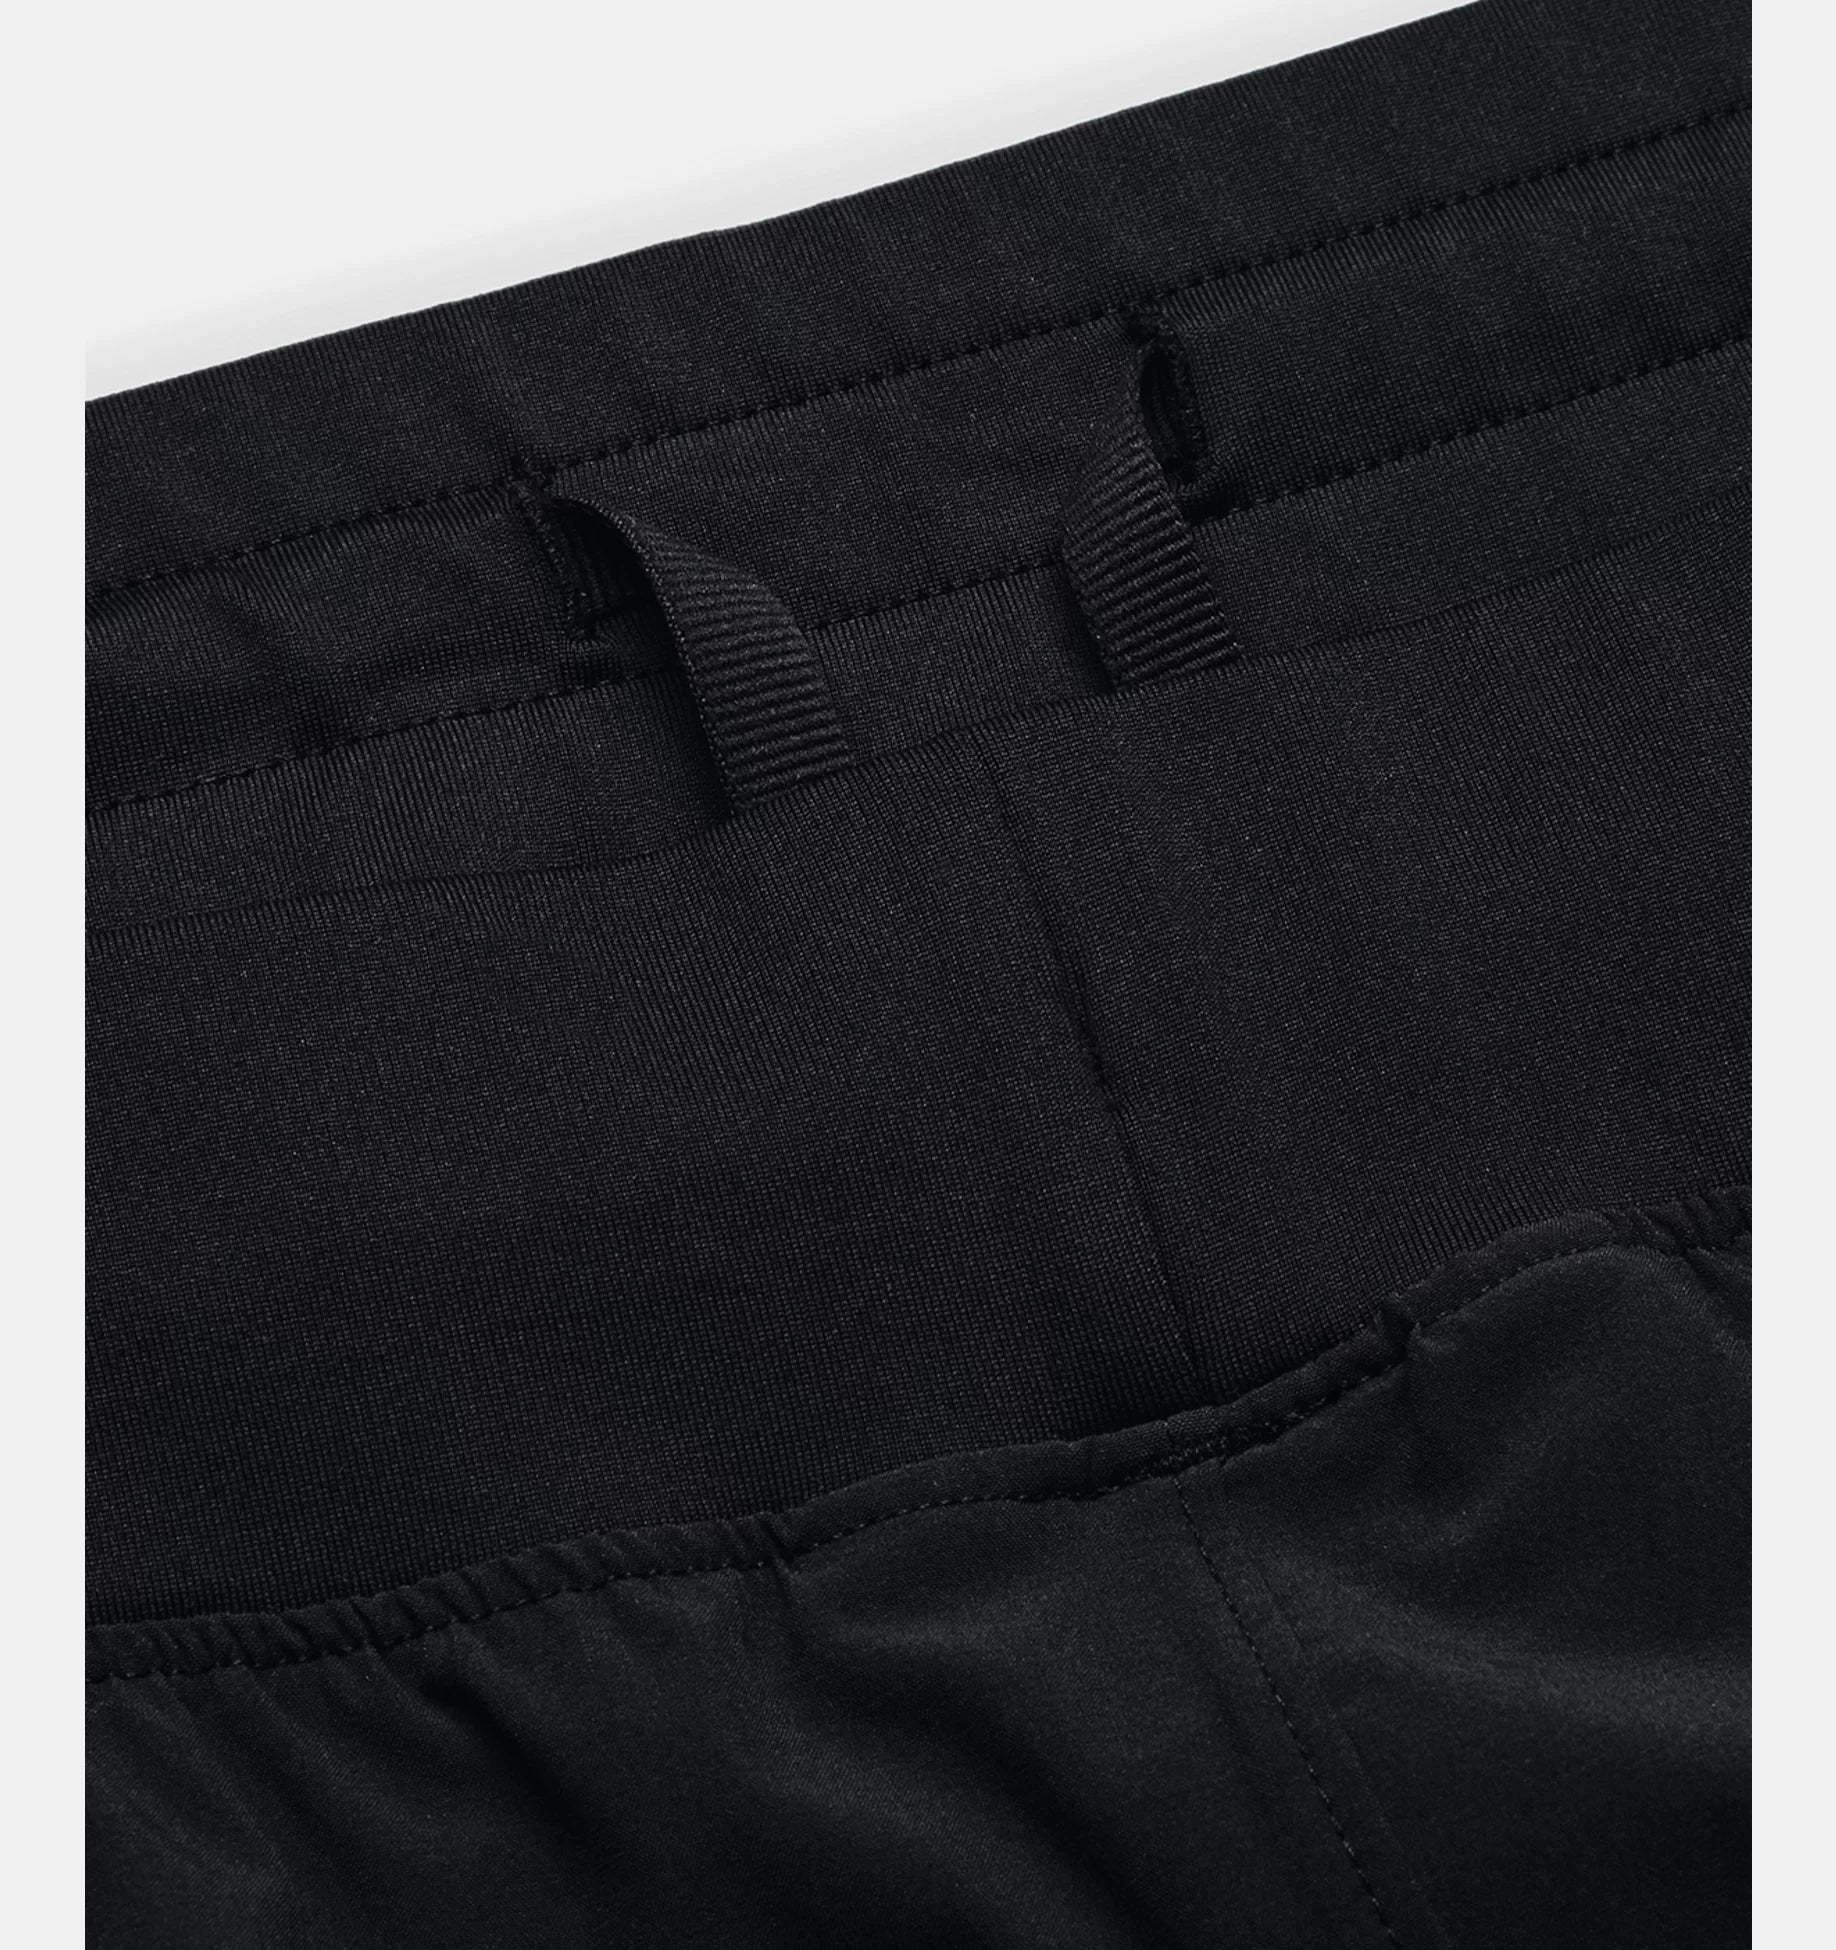 Pantalon tissé extensible UA pour hommes - black